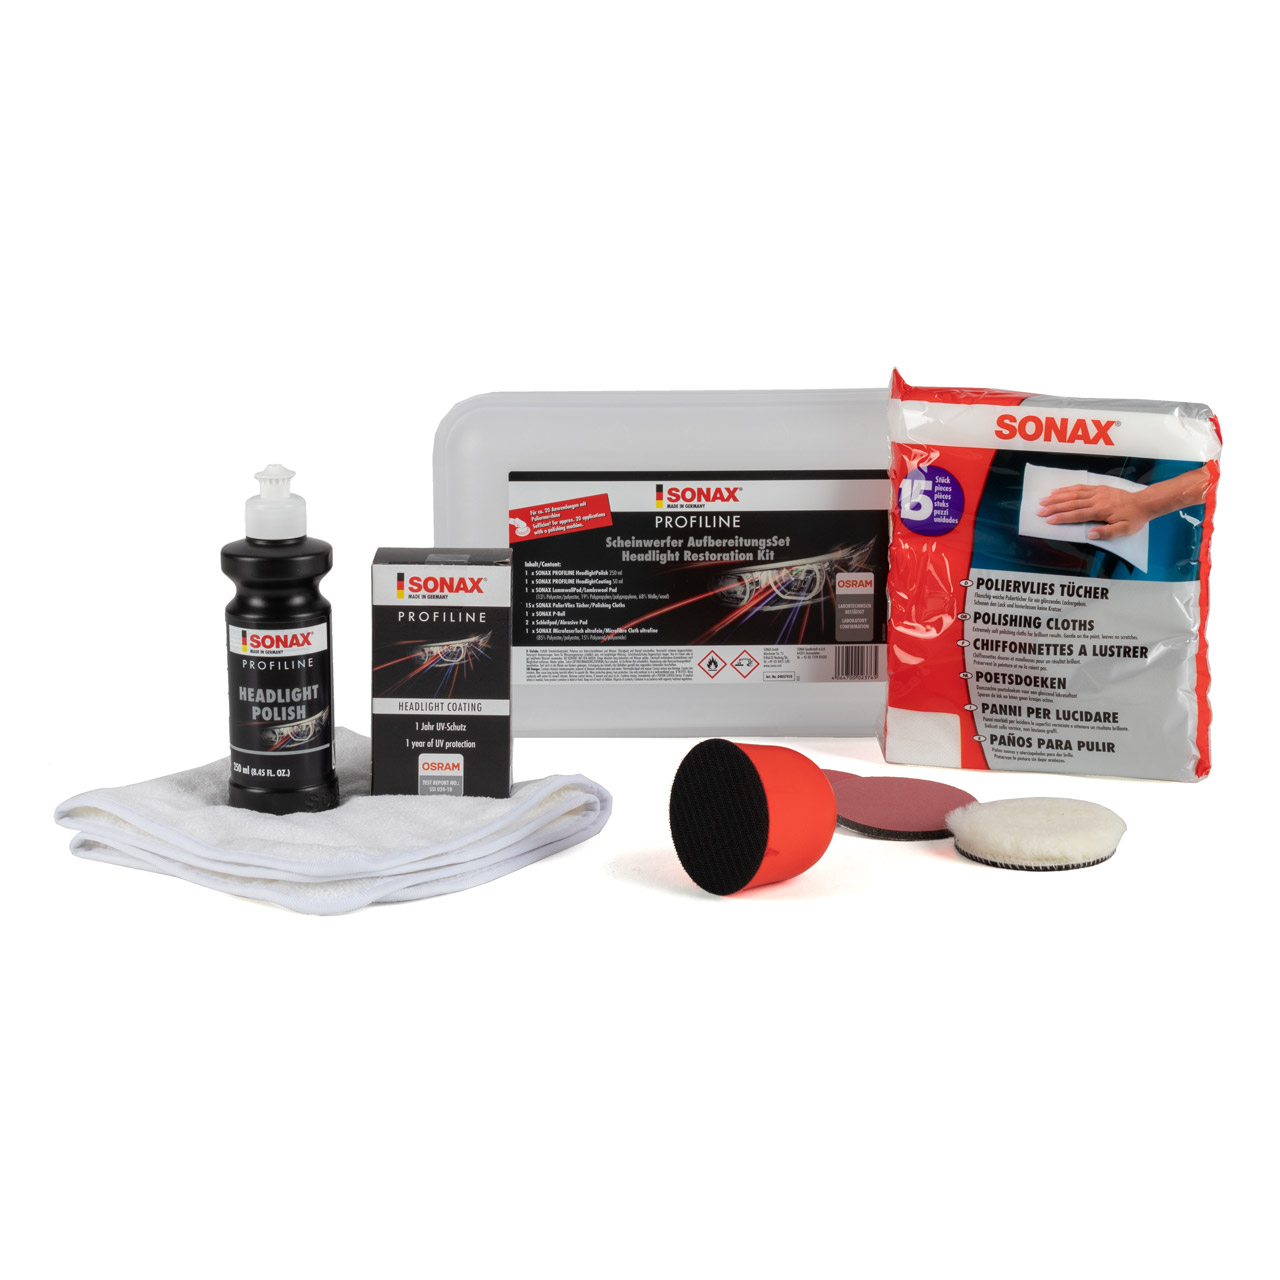 SONAX 04057410 Profiline Scheinwerfer Aufbereitungsset Reparaturset Scheinwerferpolitur